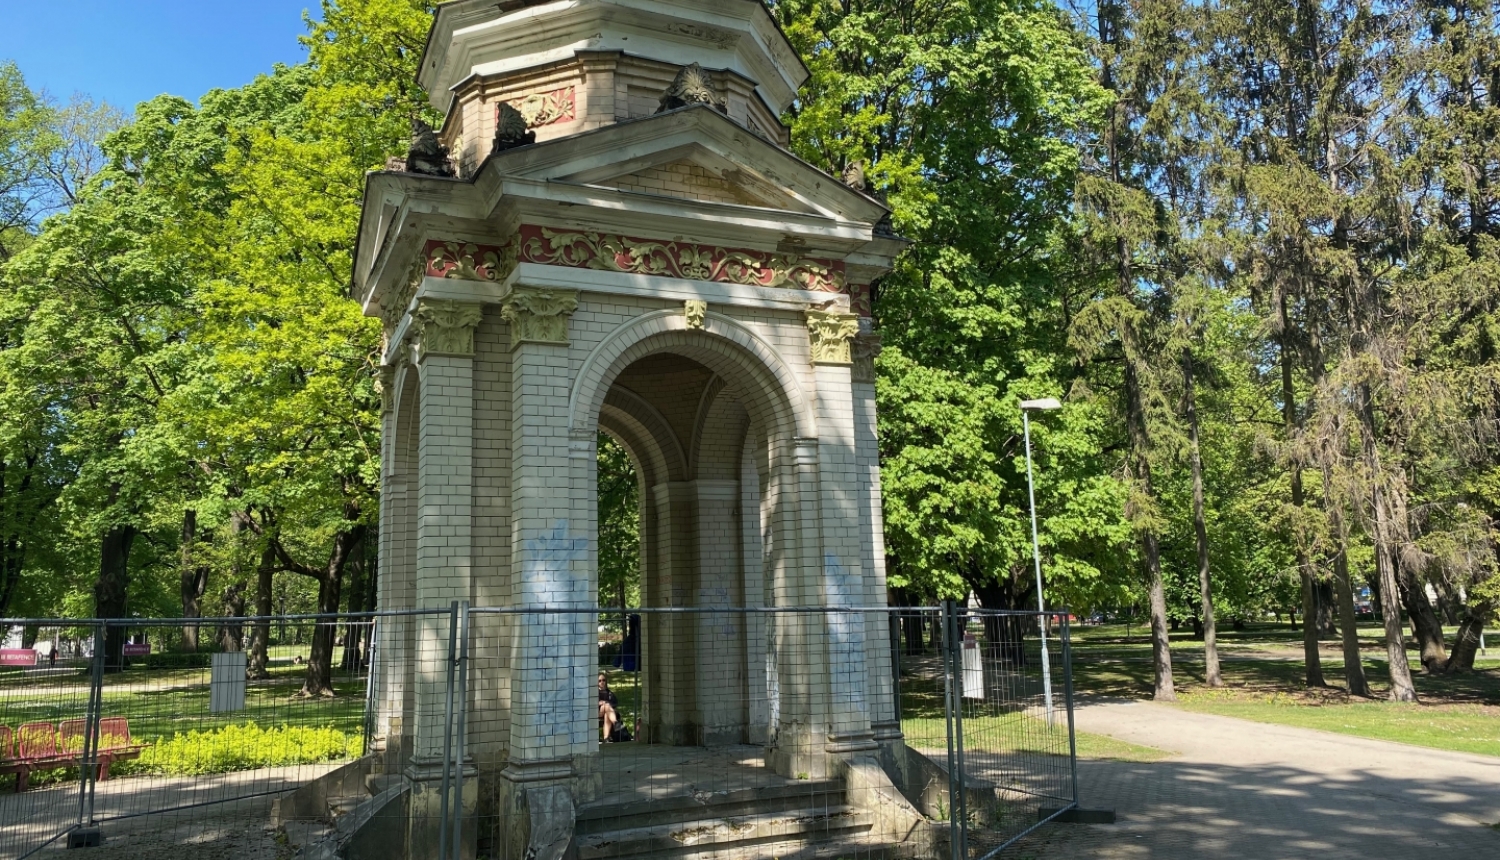  Rīgas 700 gadu jubilejas paviljons Kronvalda parkā